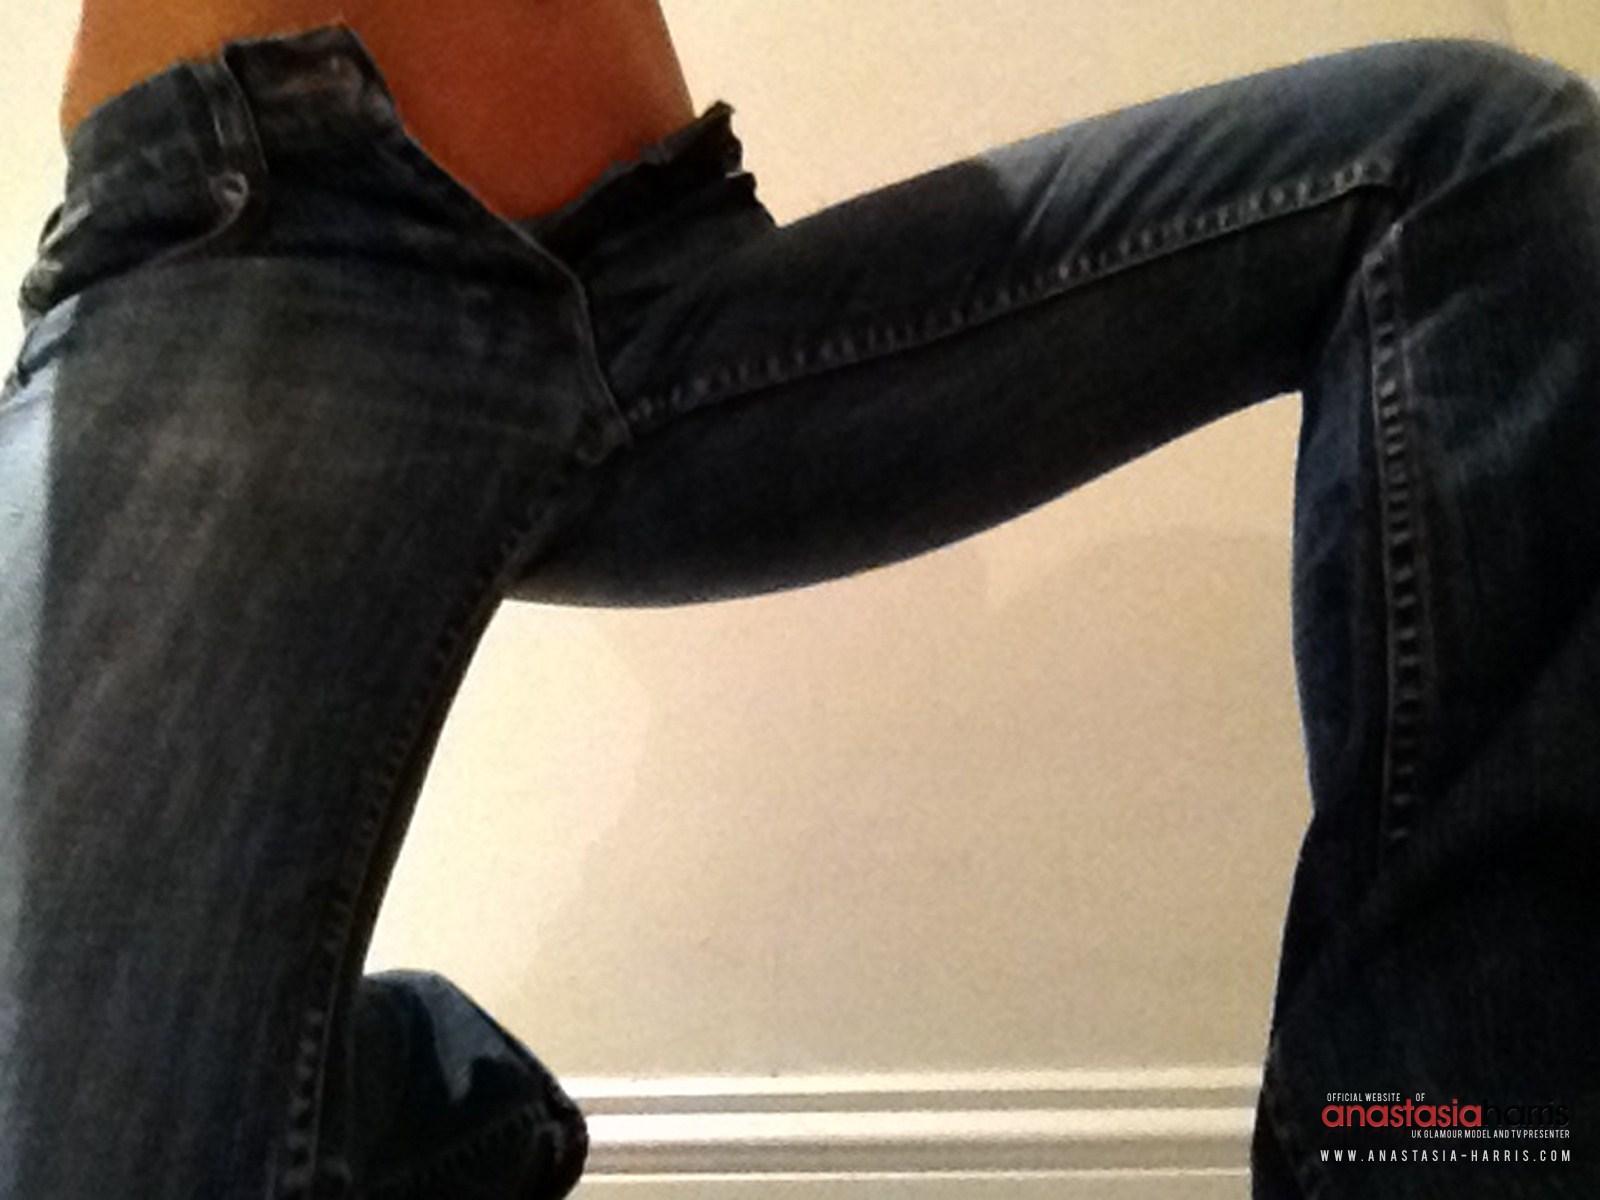 Anastasia harris gioca con i suoi jeans stretti e li toglie
 #53126496